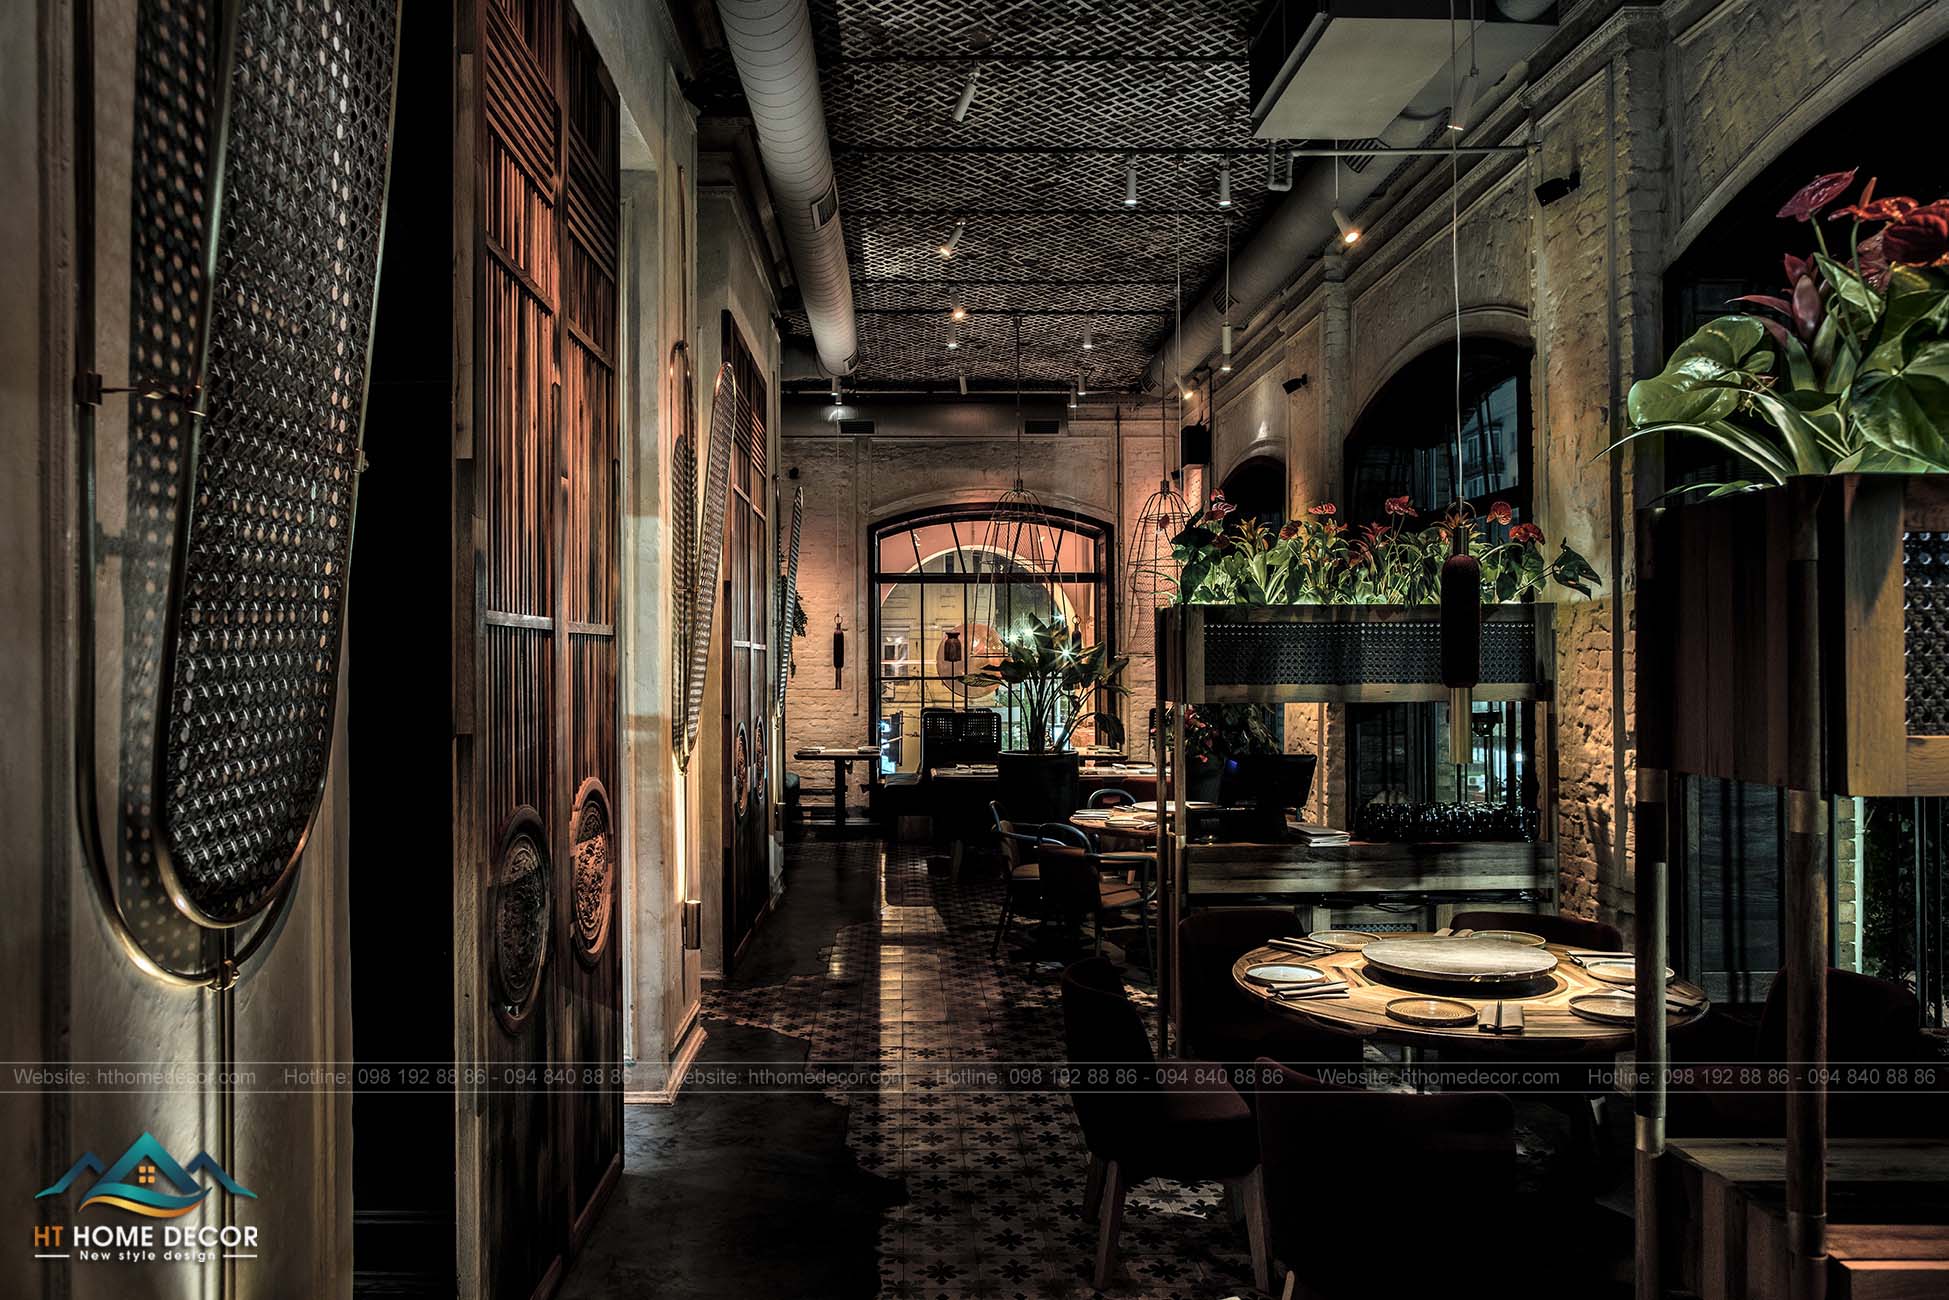 Nội thất hoàng gia đã tạo nên một không hoành tráng, những lát gạch hoa văn cổ điển, phù hợp cho không gian nhà hàng.